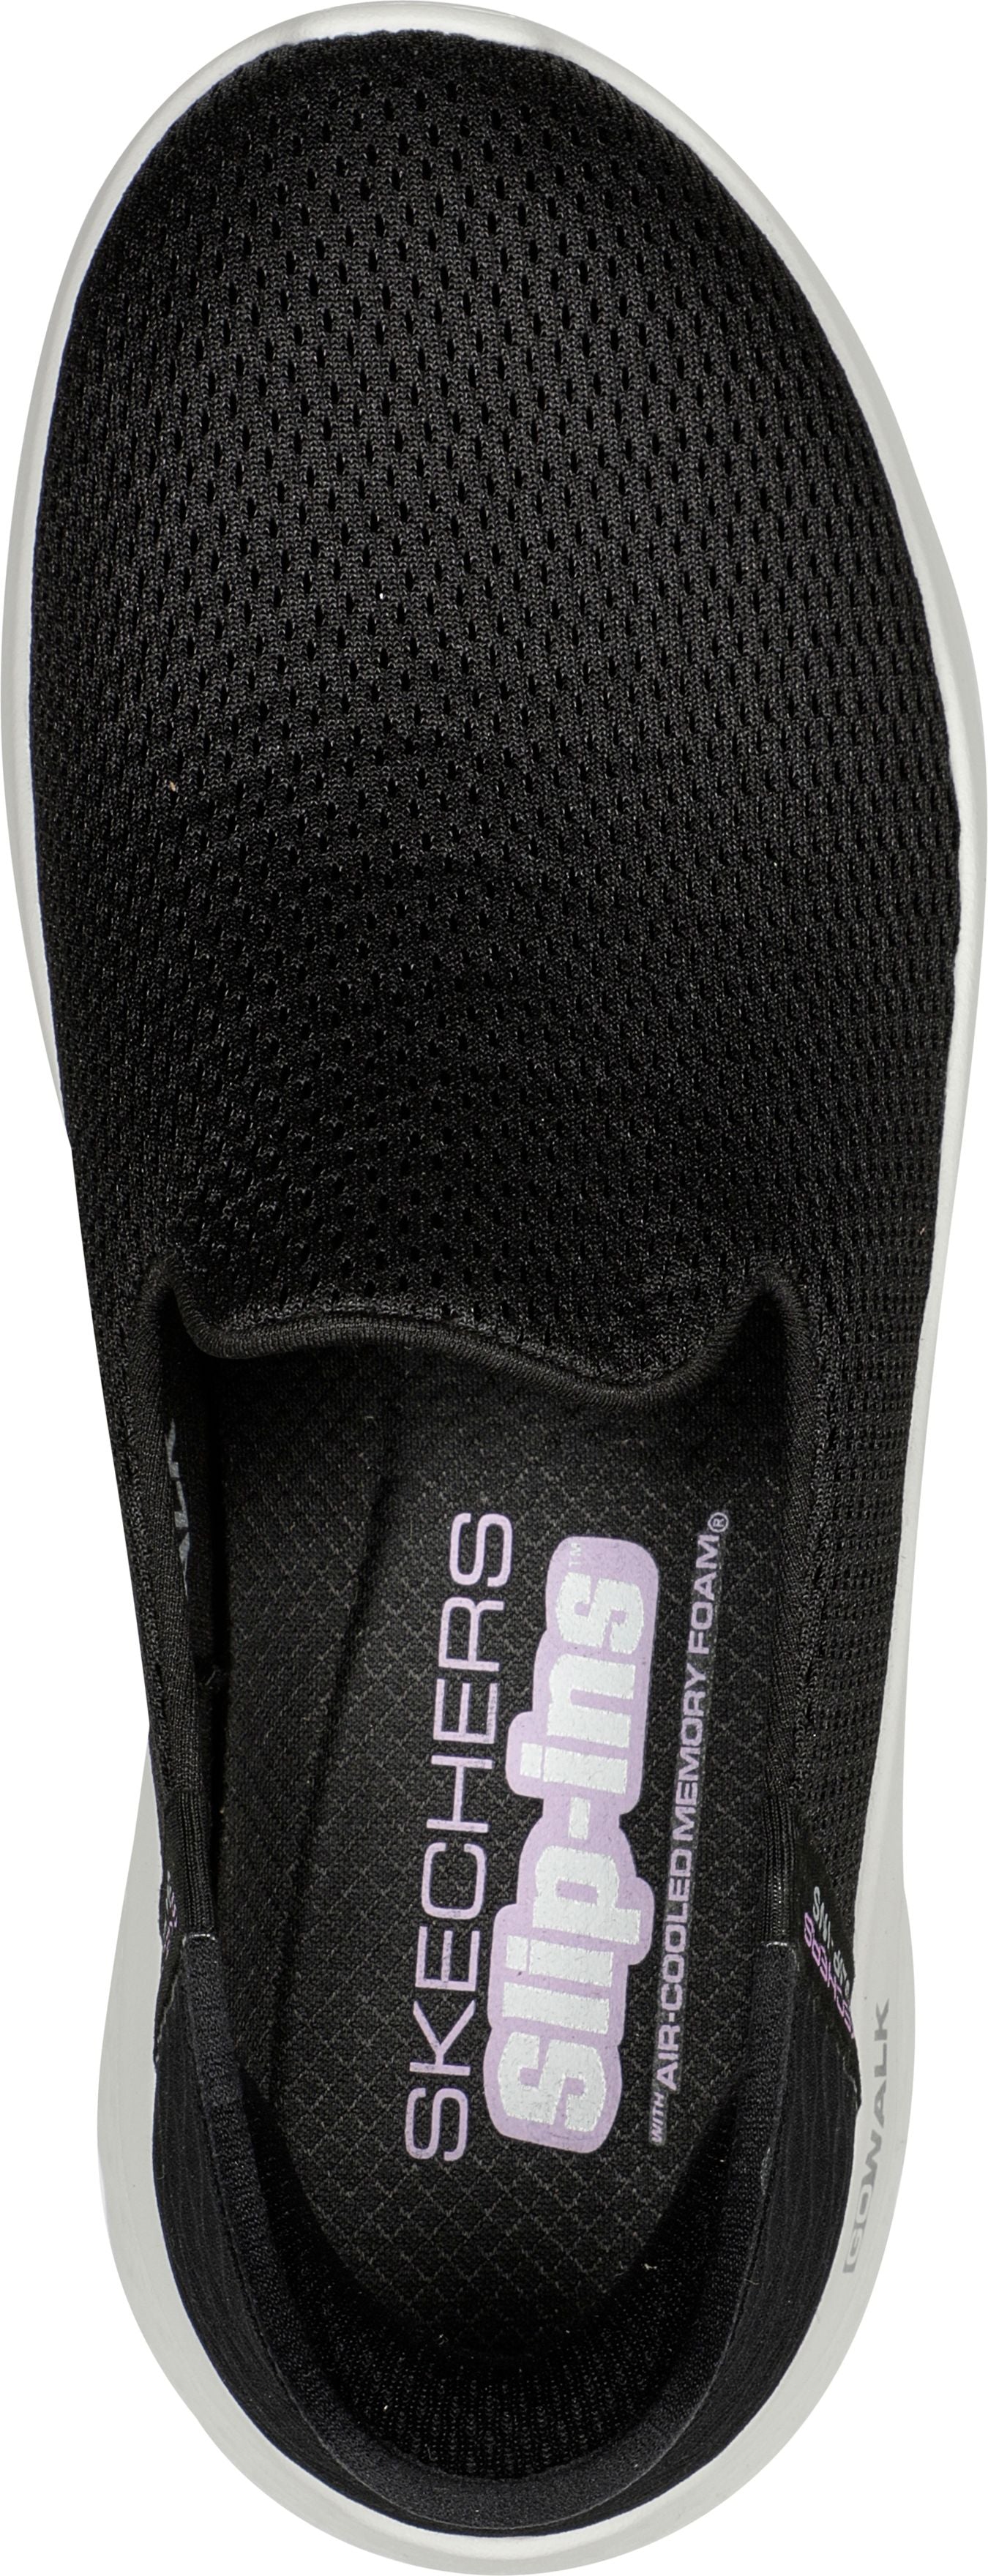 Skechers Shoes Slip-ins Go Walk Flex Relish Black White